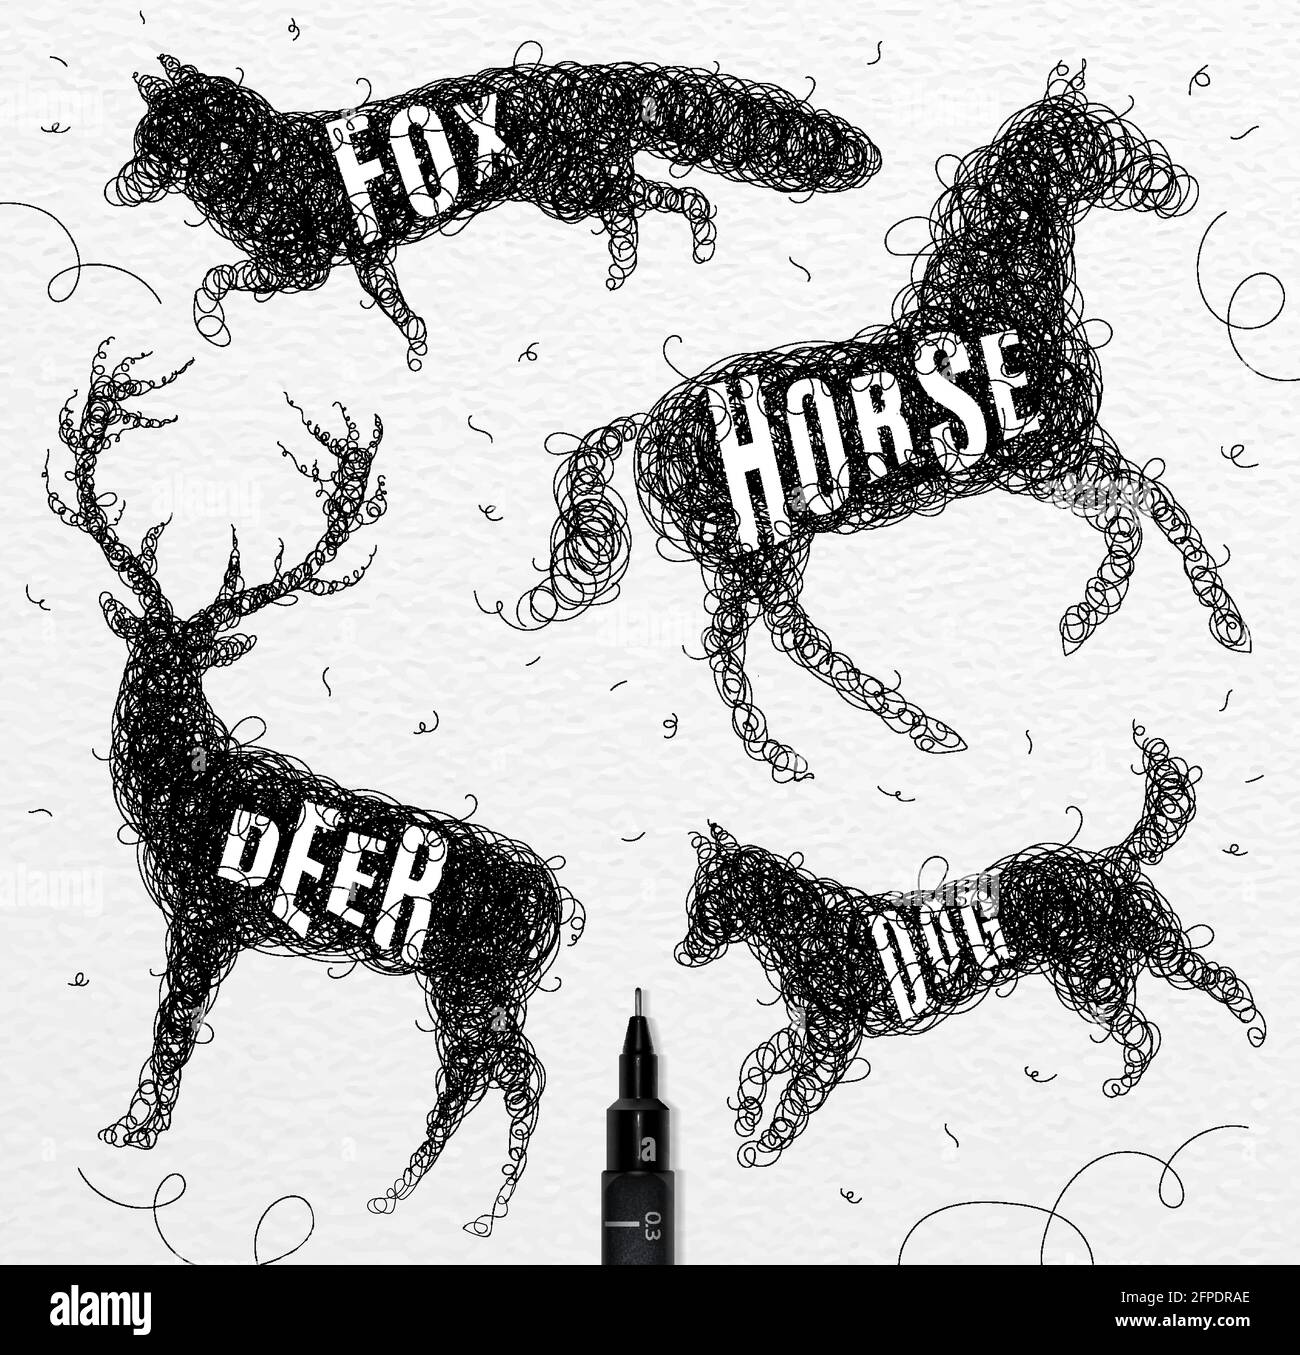 Stylo main dessin enchevêtrement animaux sauvages cerf, cheval, renard, chien avec inscription noms des animaux dessin sur fond papier Illustration de Vecteur